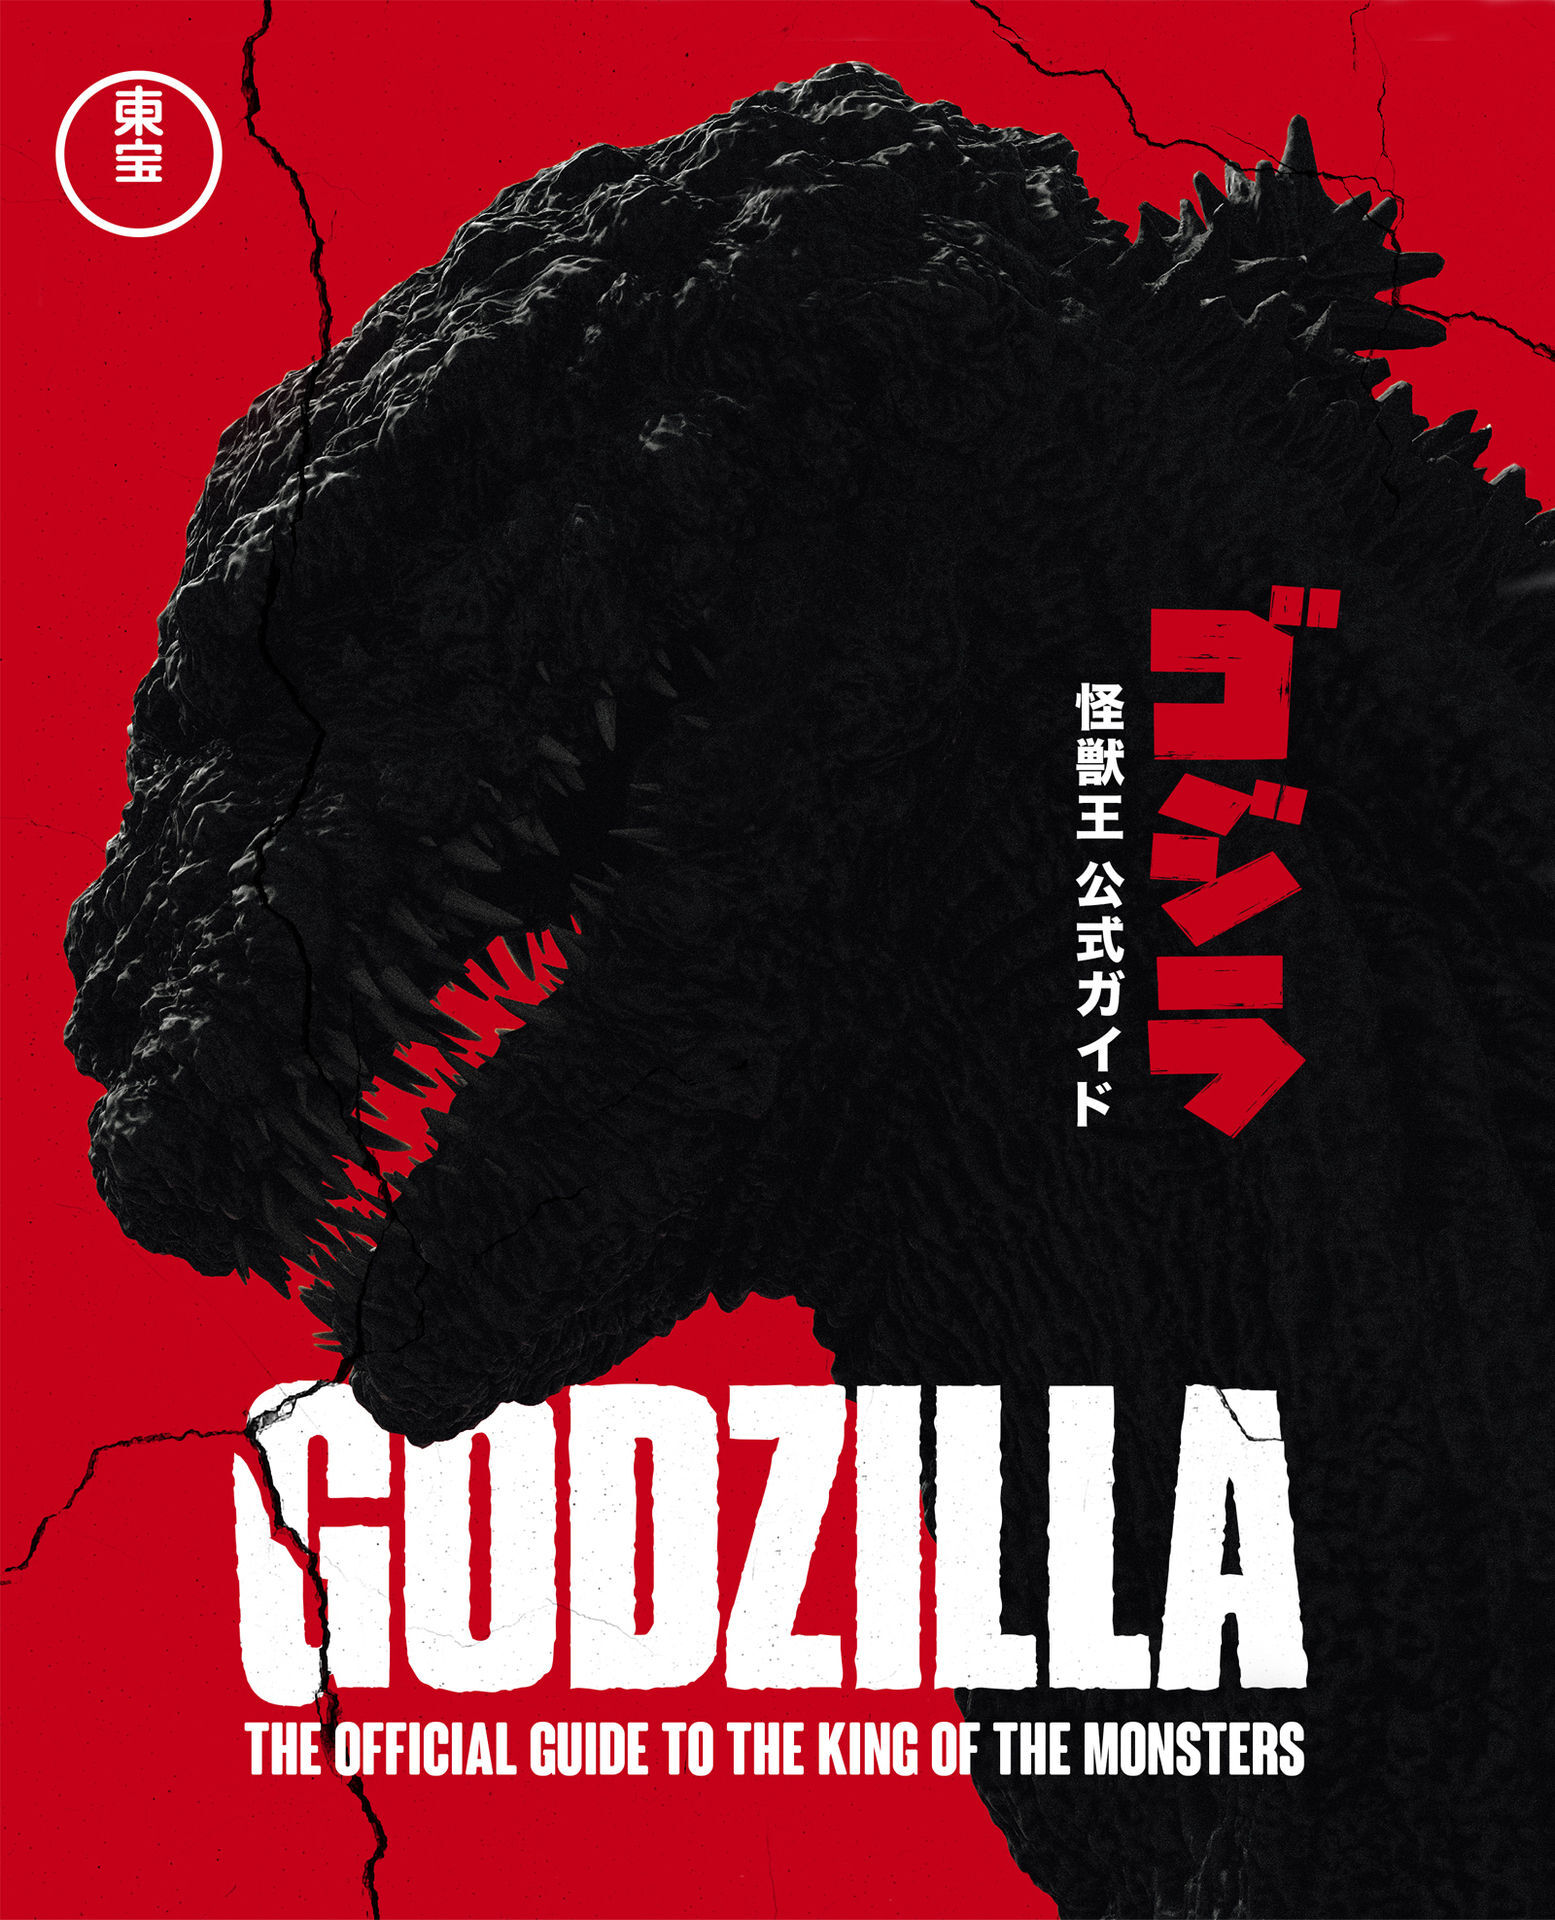 Godzilla_book5yy4w.jpg